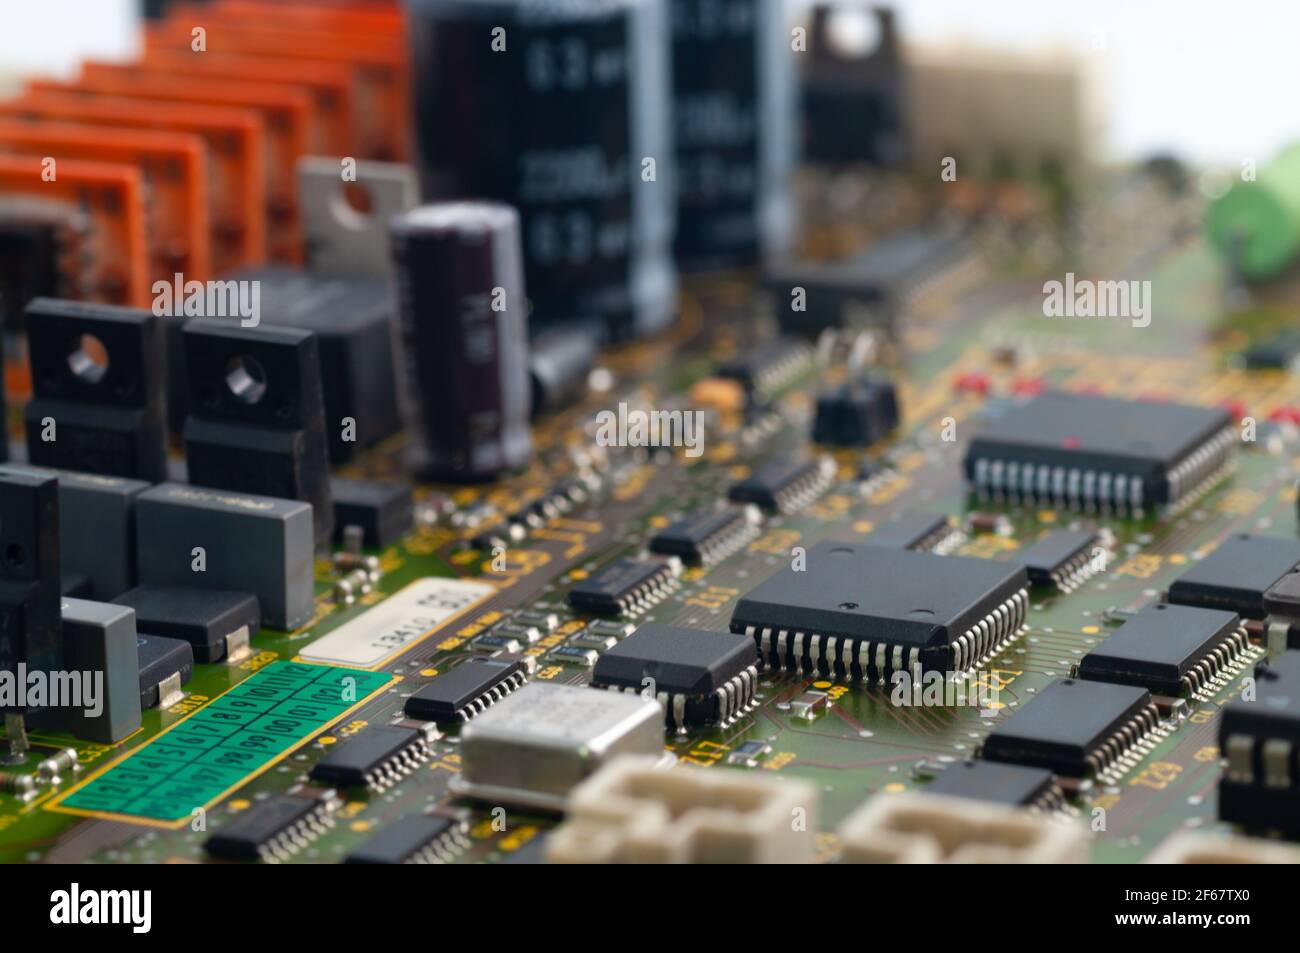 Nahaufnahme der elektronischen Leiterplatte mit Mikrochip, Prozessor, integrierten Schaltungen, Widerständen und elektronischen Anschlüssen. Stockfoto